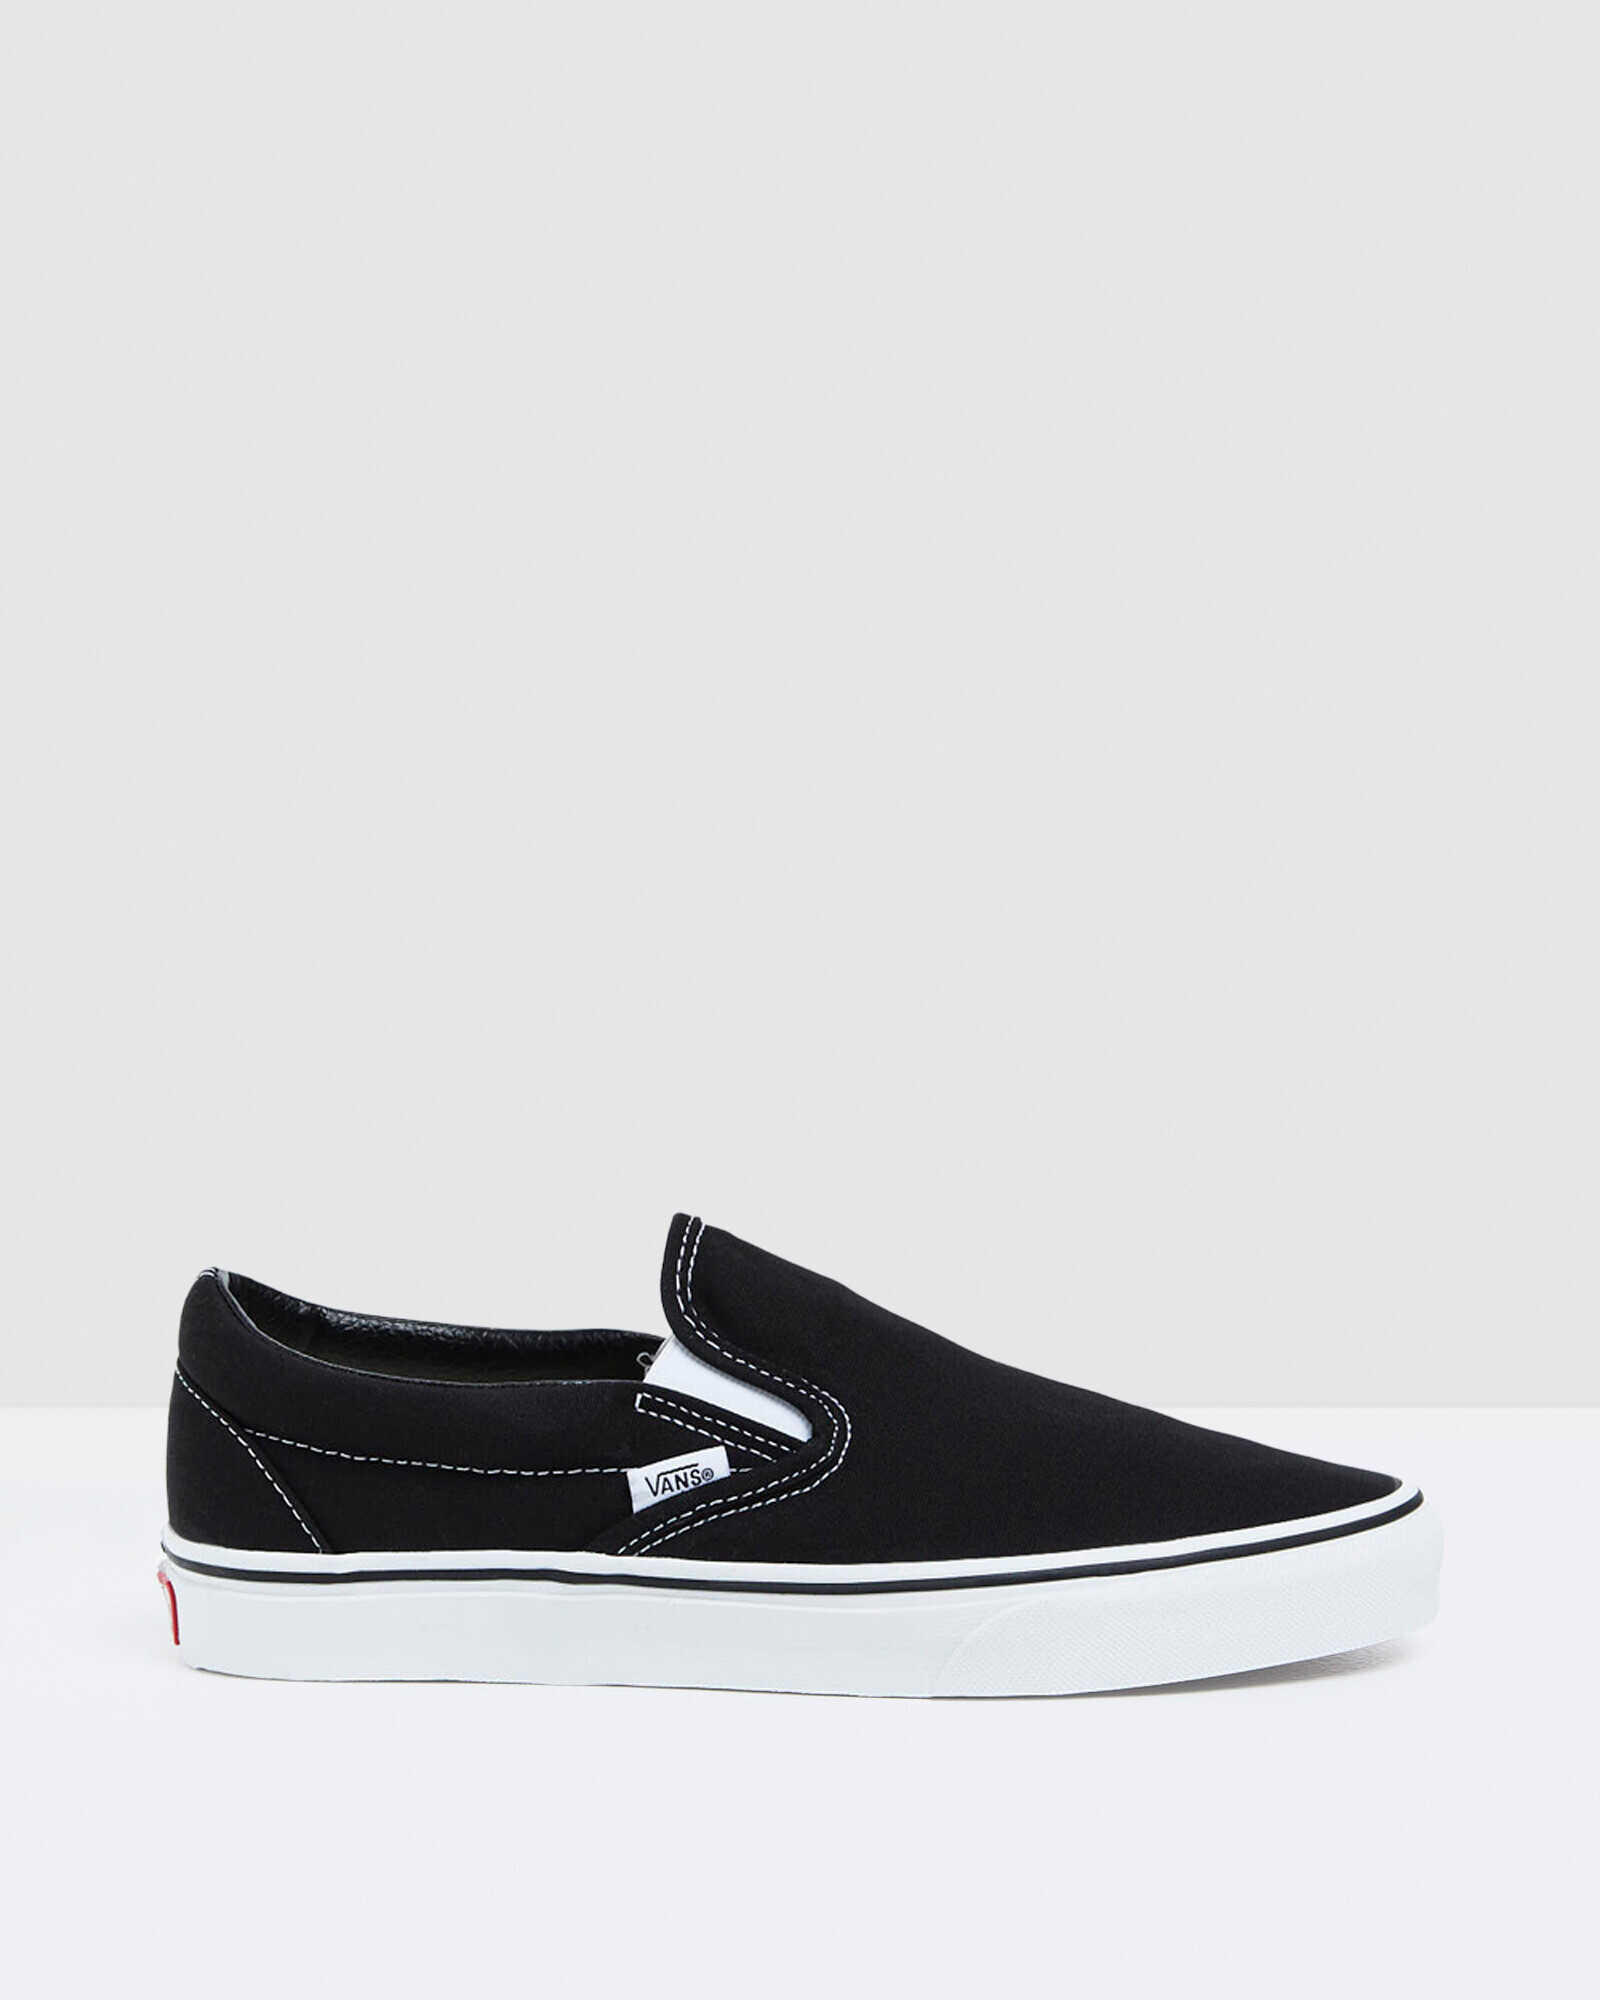 Vans Classic Slip On Sneakers Black/White | Footwear | Shop | General Pants